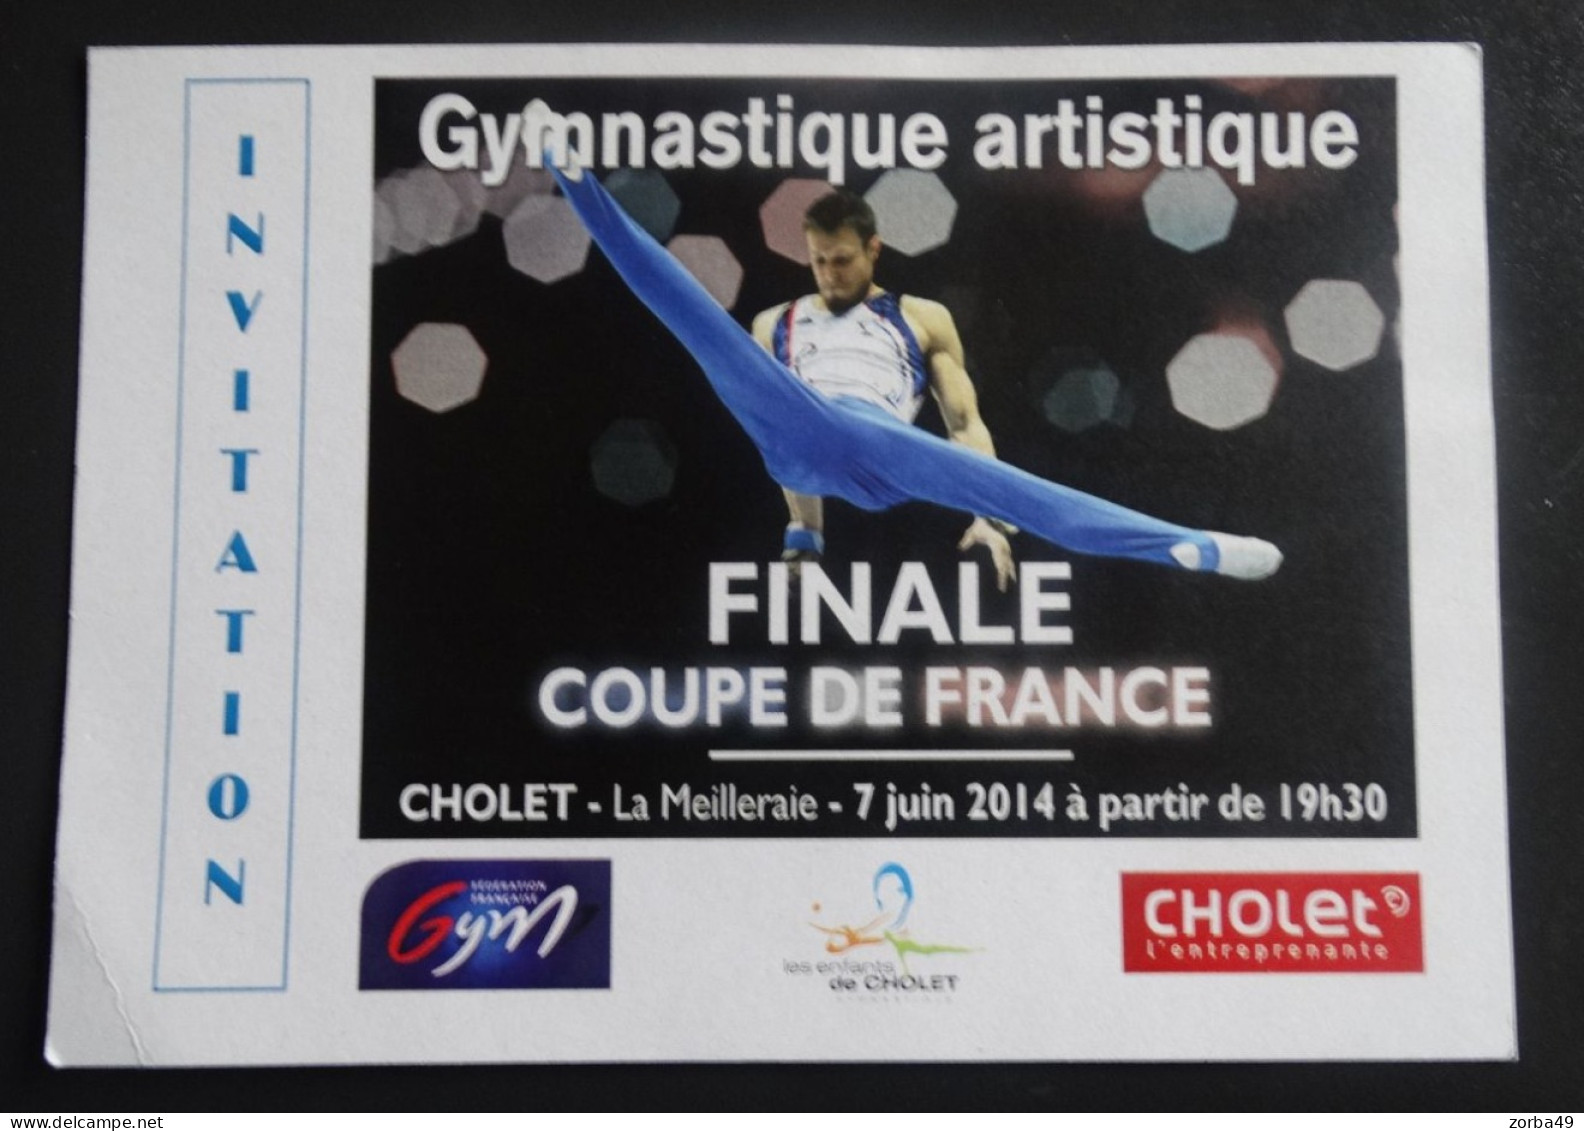 CHOLET Invitation Finale Coupe De France De Gymnastique Artistique 2014 - Gymnastiek